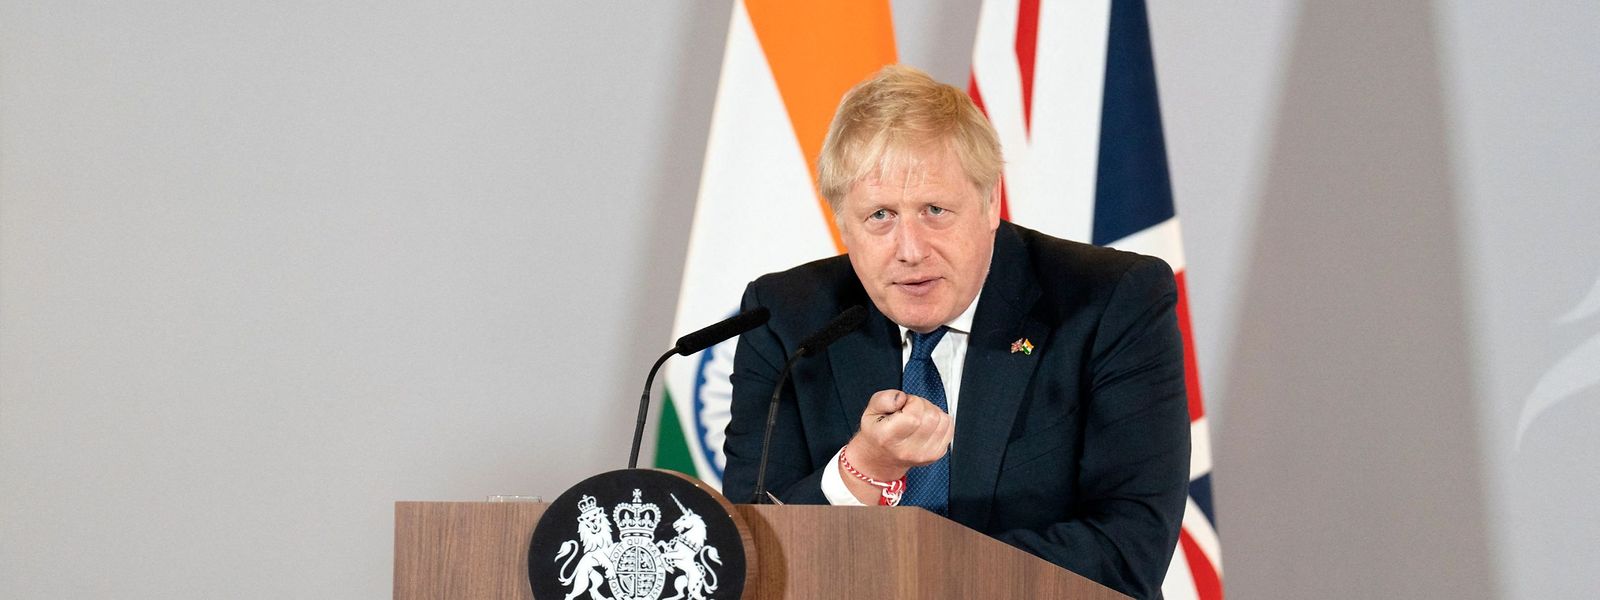 Boris Johnson spricht bei einer Pressekonferenz in Neu Delhi über seine Indienreise. Doch zu Hause droht ihm Ungemach.